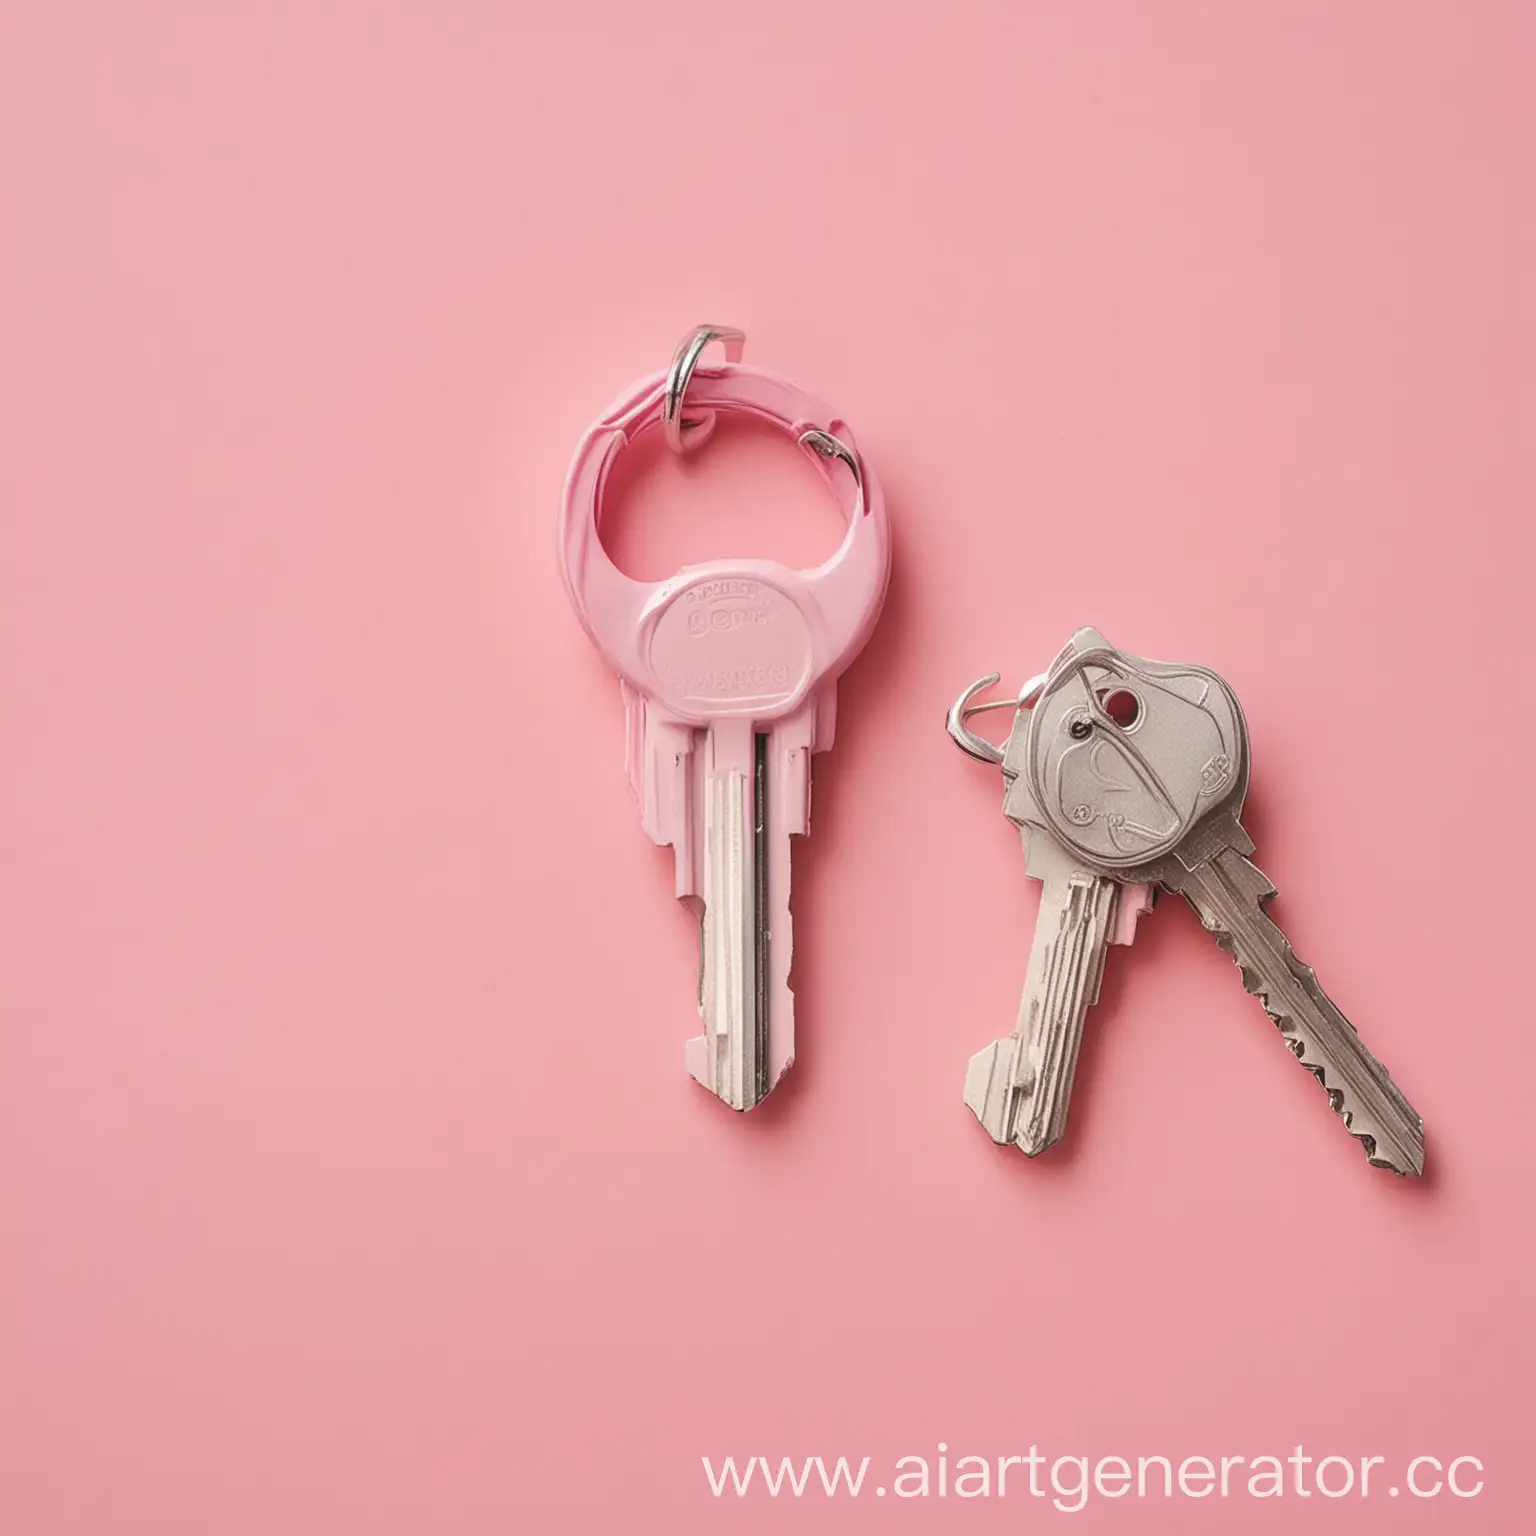 Пост фото для бизнес проекта с бесплатным ключом доступа на 48 часов в пастельно розовом оттенке